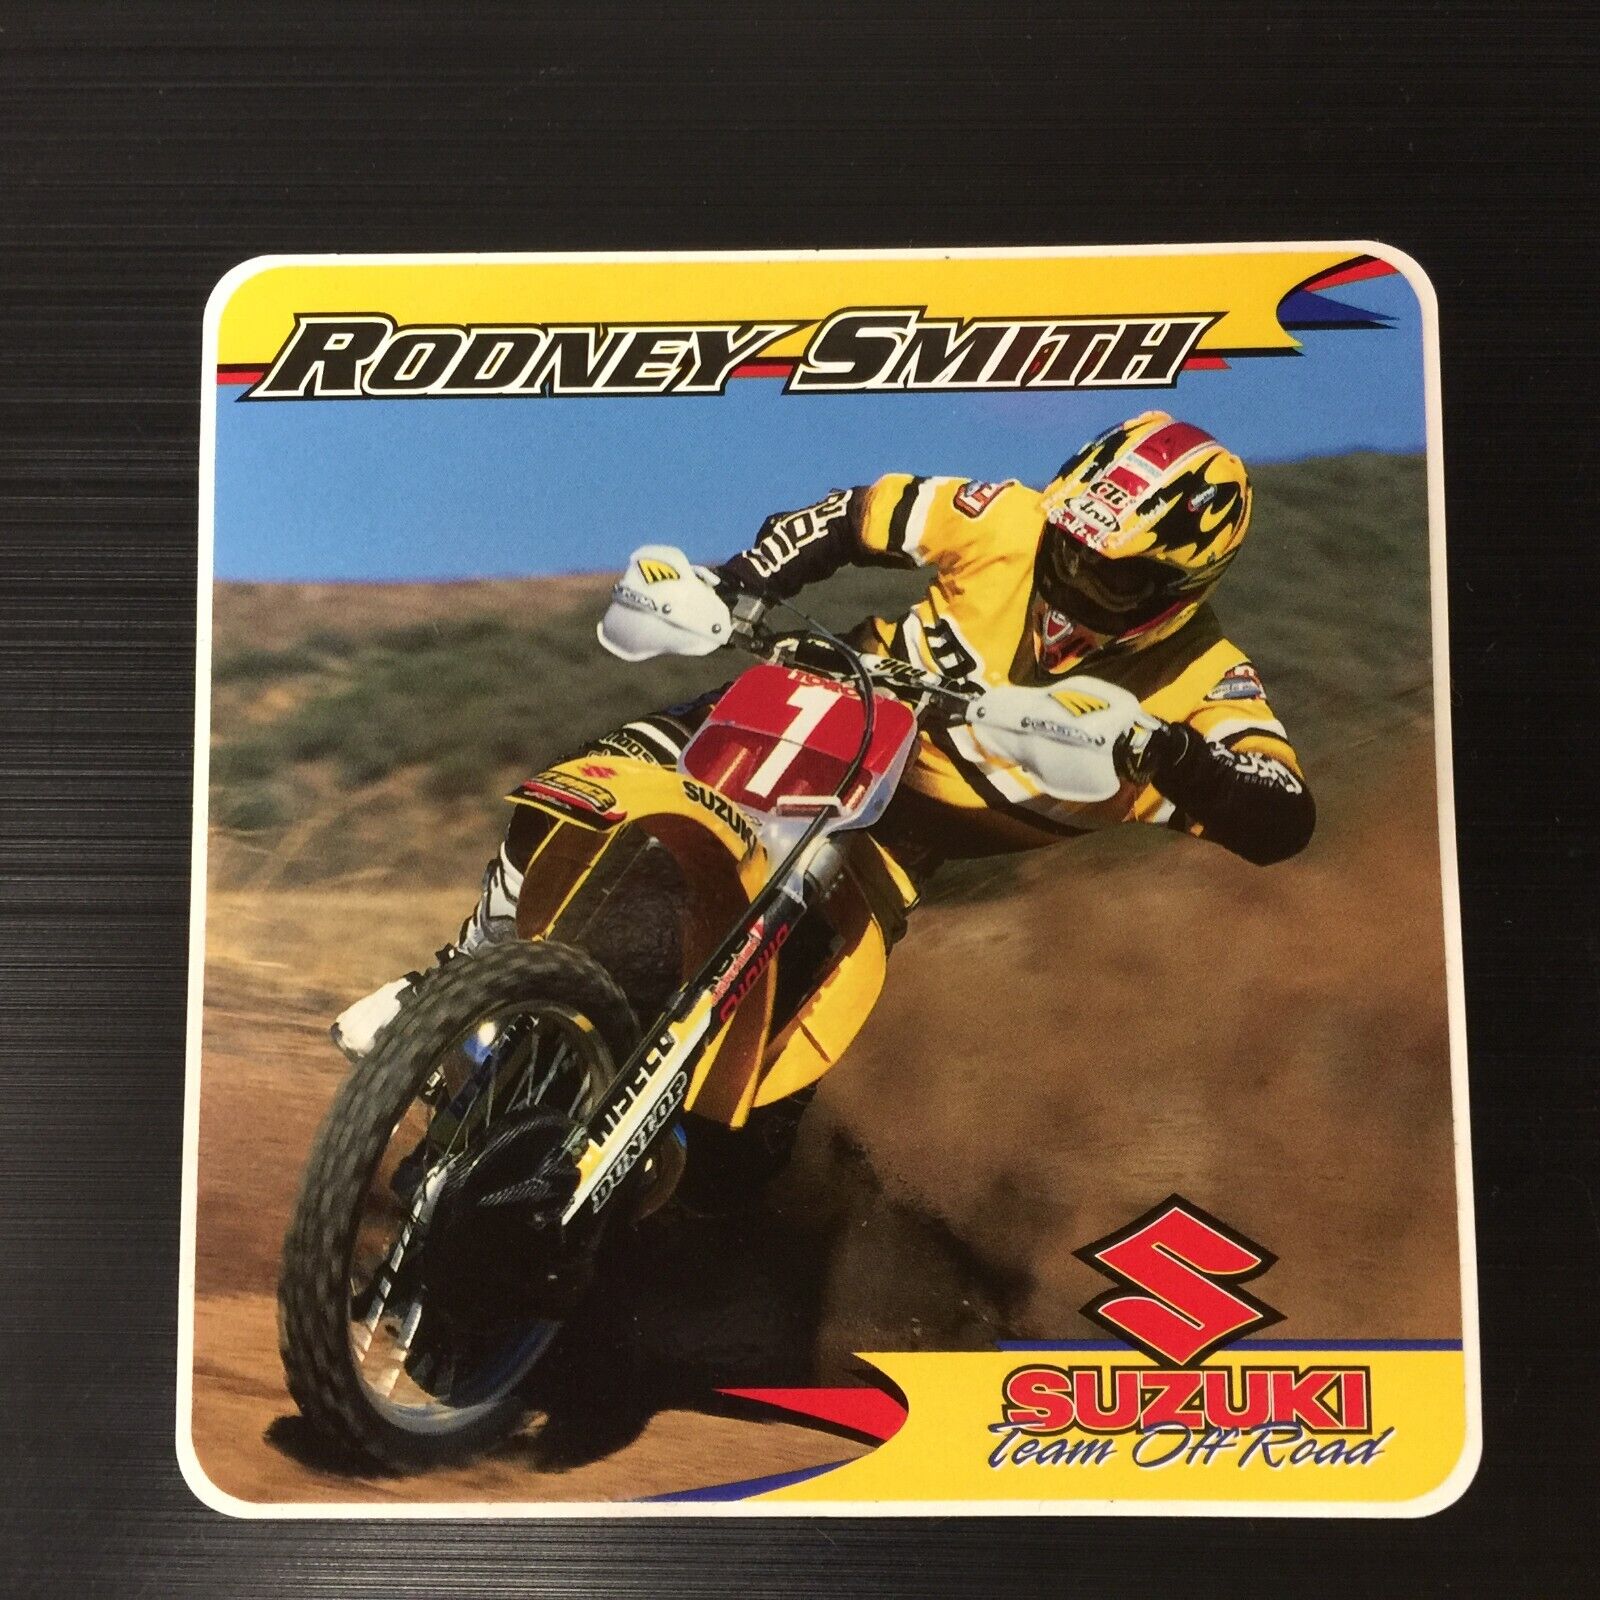 Rodney Smith Team Suzuki Off-Road Sticker Decal Vintage